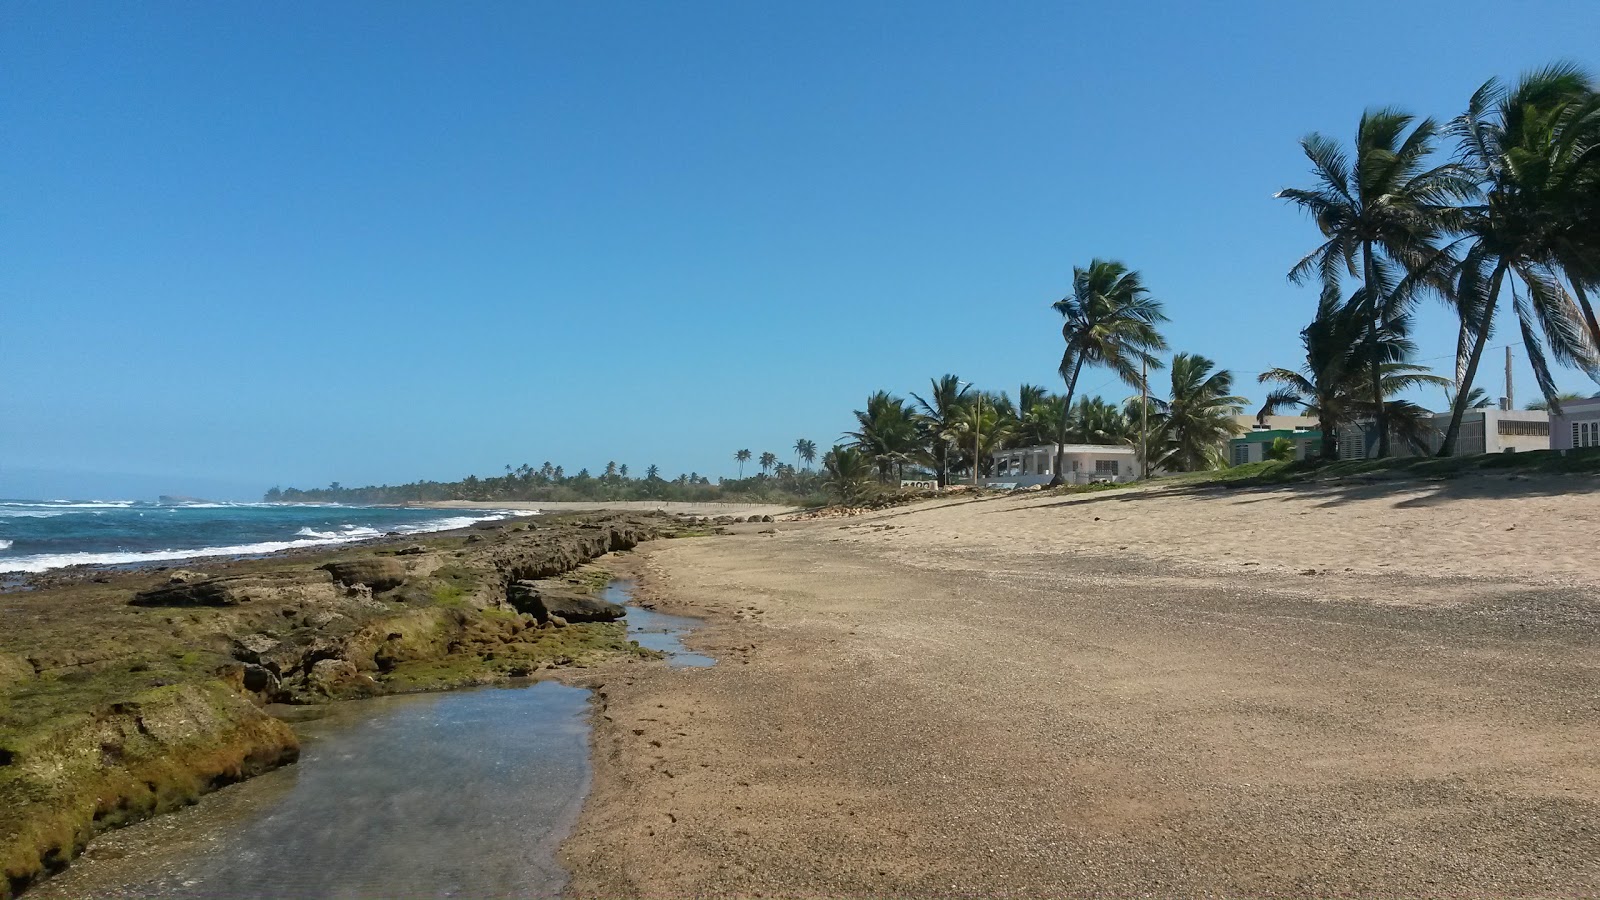 Zdjęcie Mar Azul beach z powierzchnią piasek z kamieniami